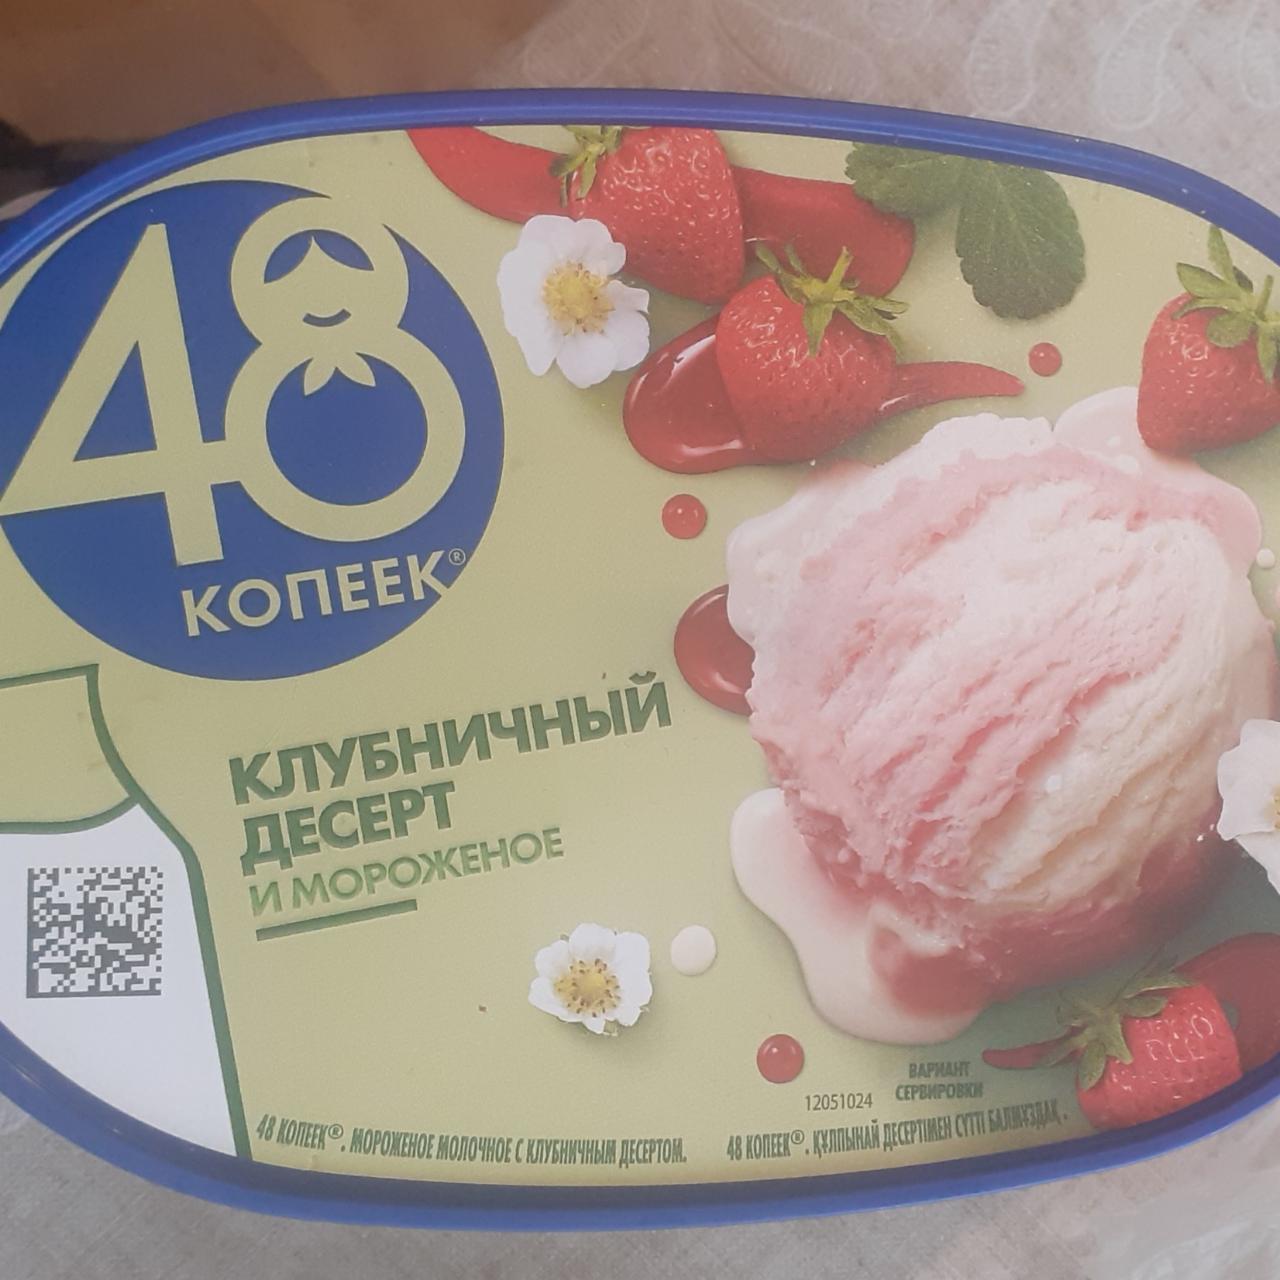 Фото - мороженое клубничный десерт 48 копеек